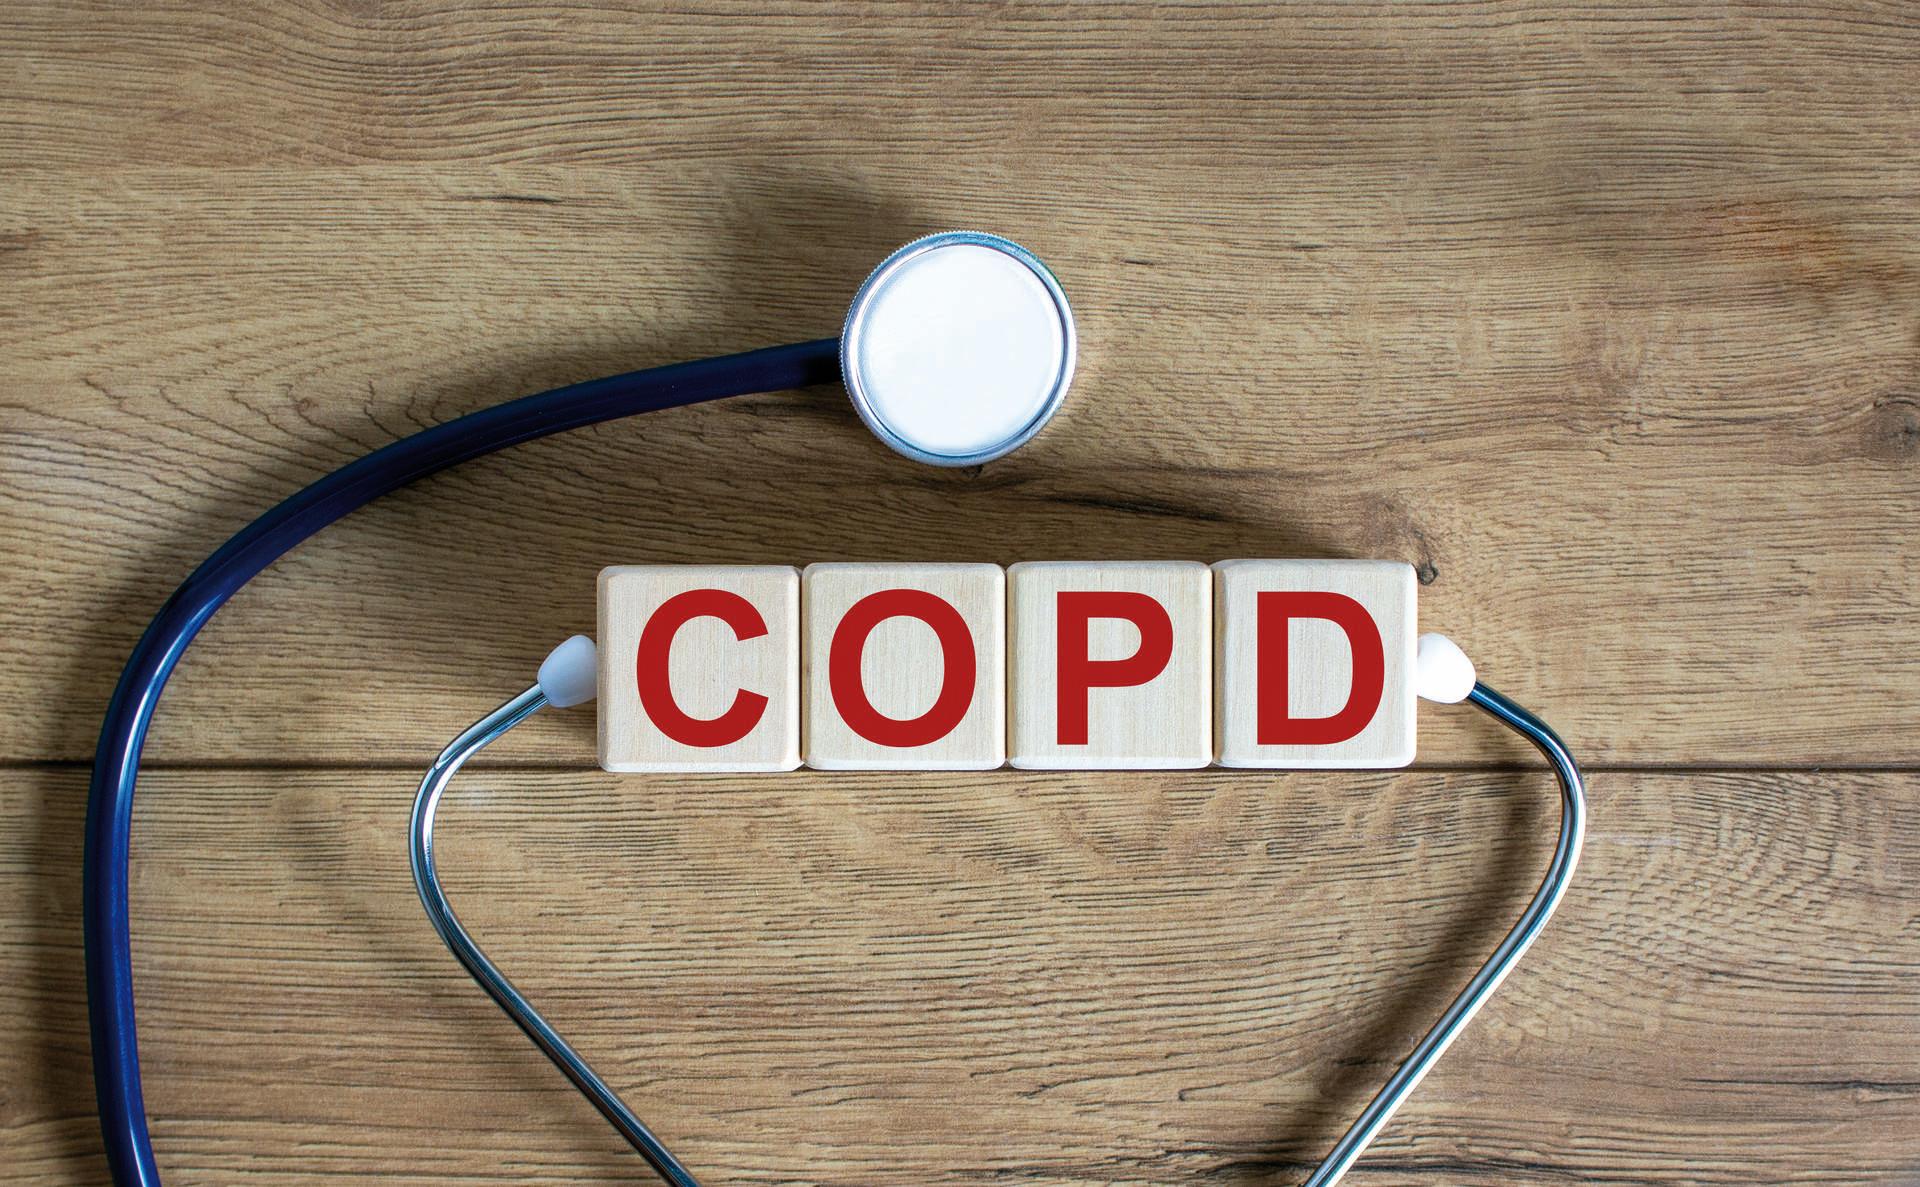 COPD medizinisches Konzept. Holzwürfel mit der Aufschrift &#8218;COPD &#8211; chronisch obstruktive Lungenerkrankung&#8216;, Stethoskop. Schöner hölzerner Hintergrund. Platz kopieren.